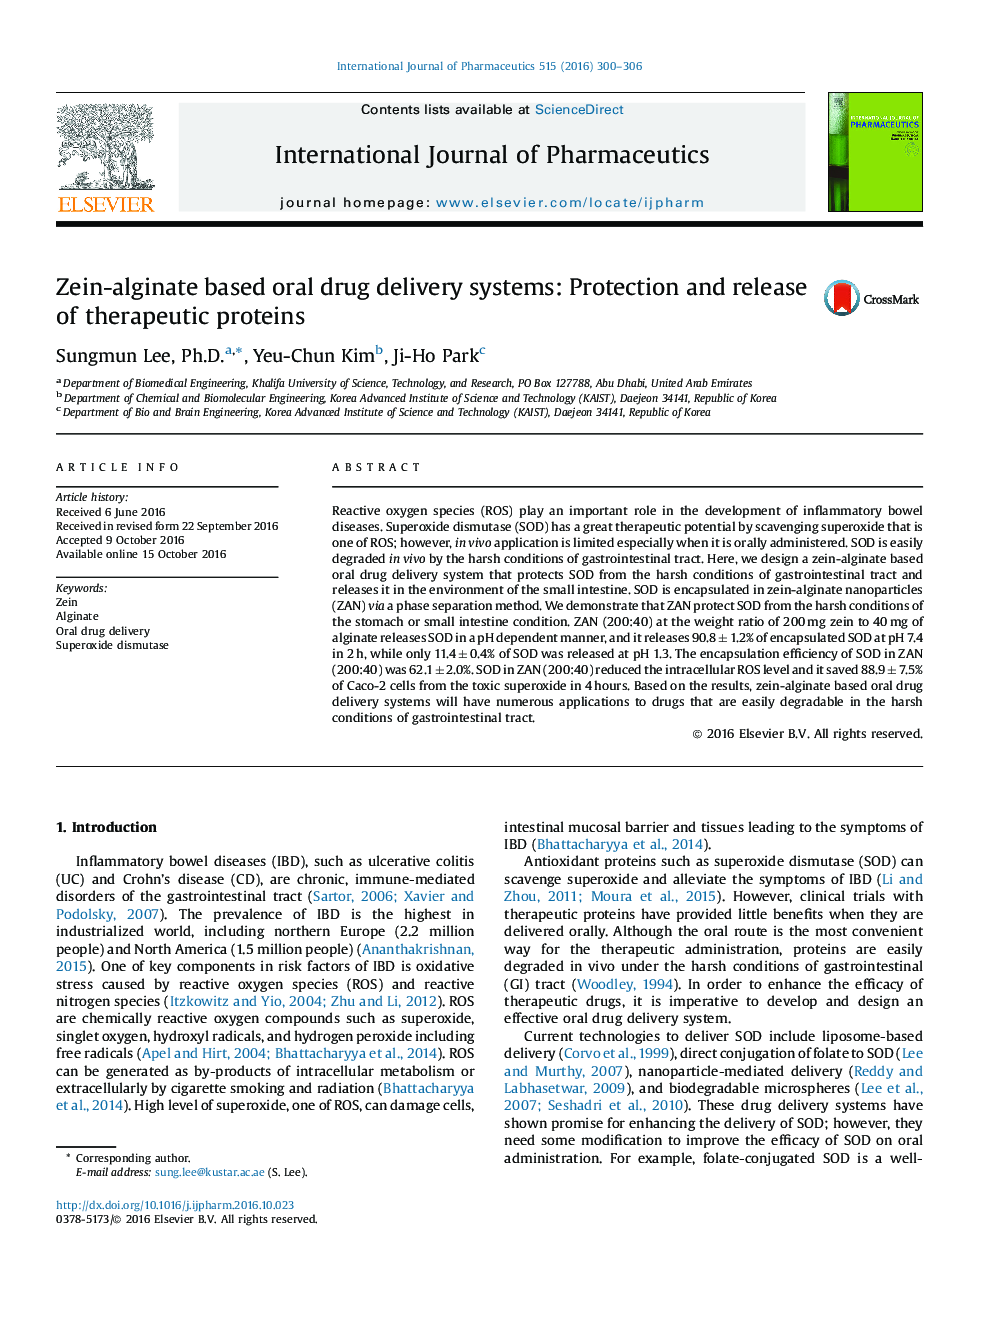 سیستم های تحویل دارویی خوراکی مبتنی بر زین آلژینات: حفاظت و آزاد سازی پروتئین های درمانی 